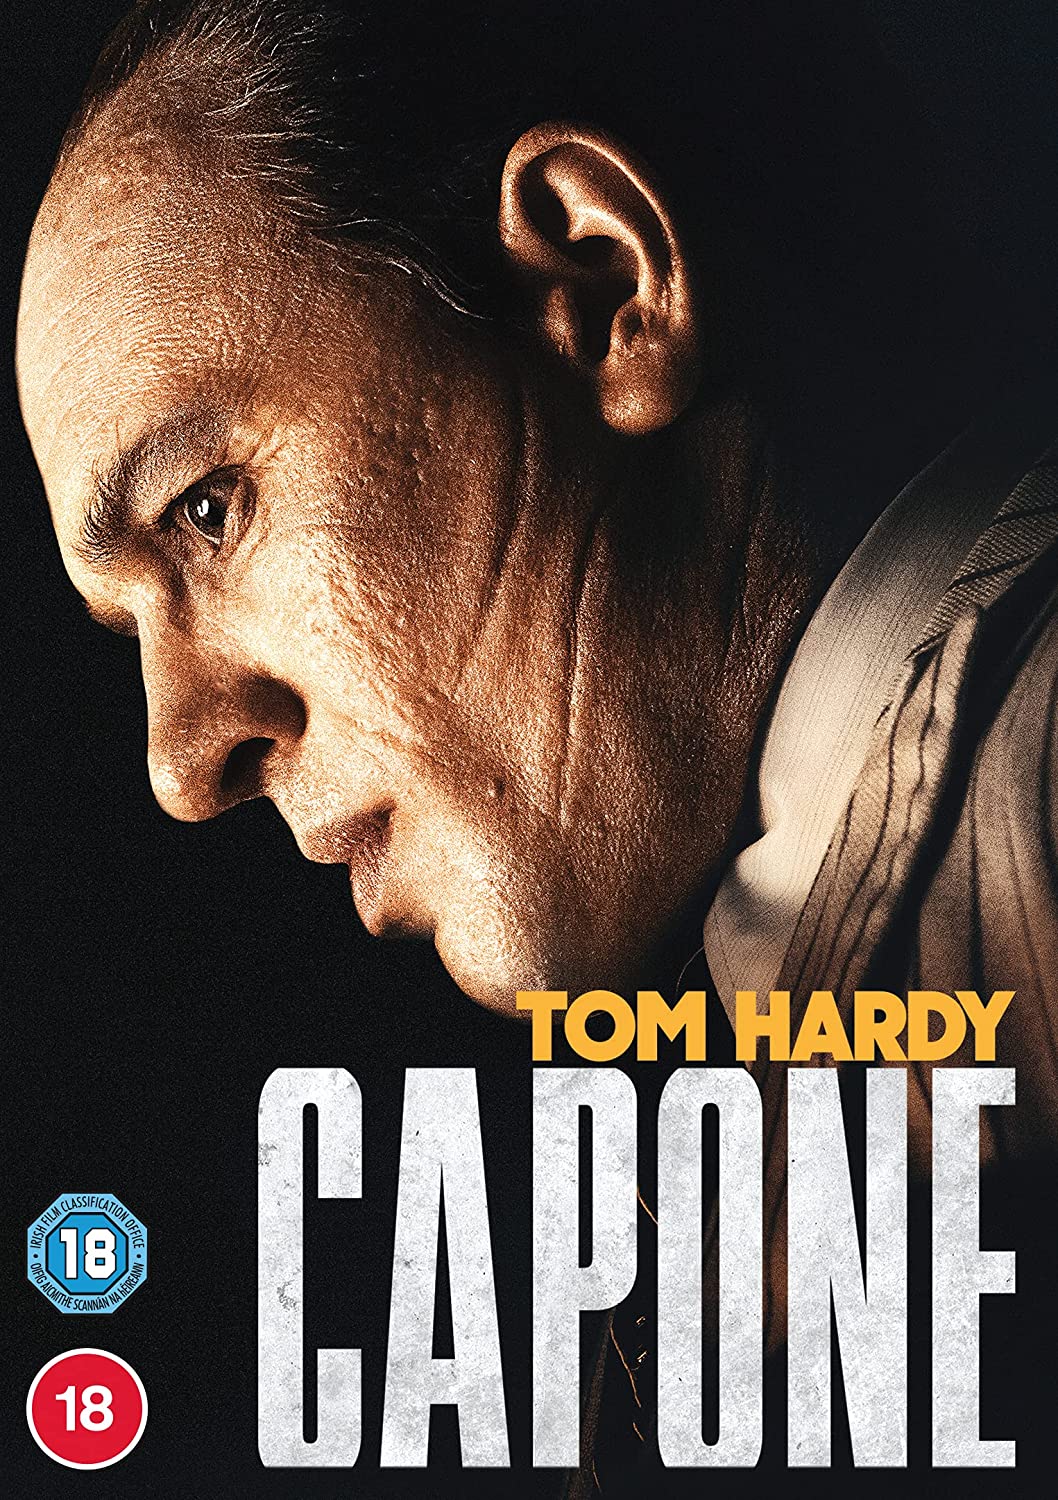 Capone [2020] - Crime/Drama [DVD]